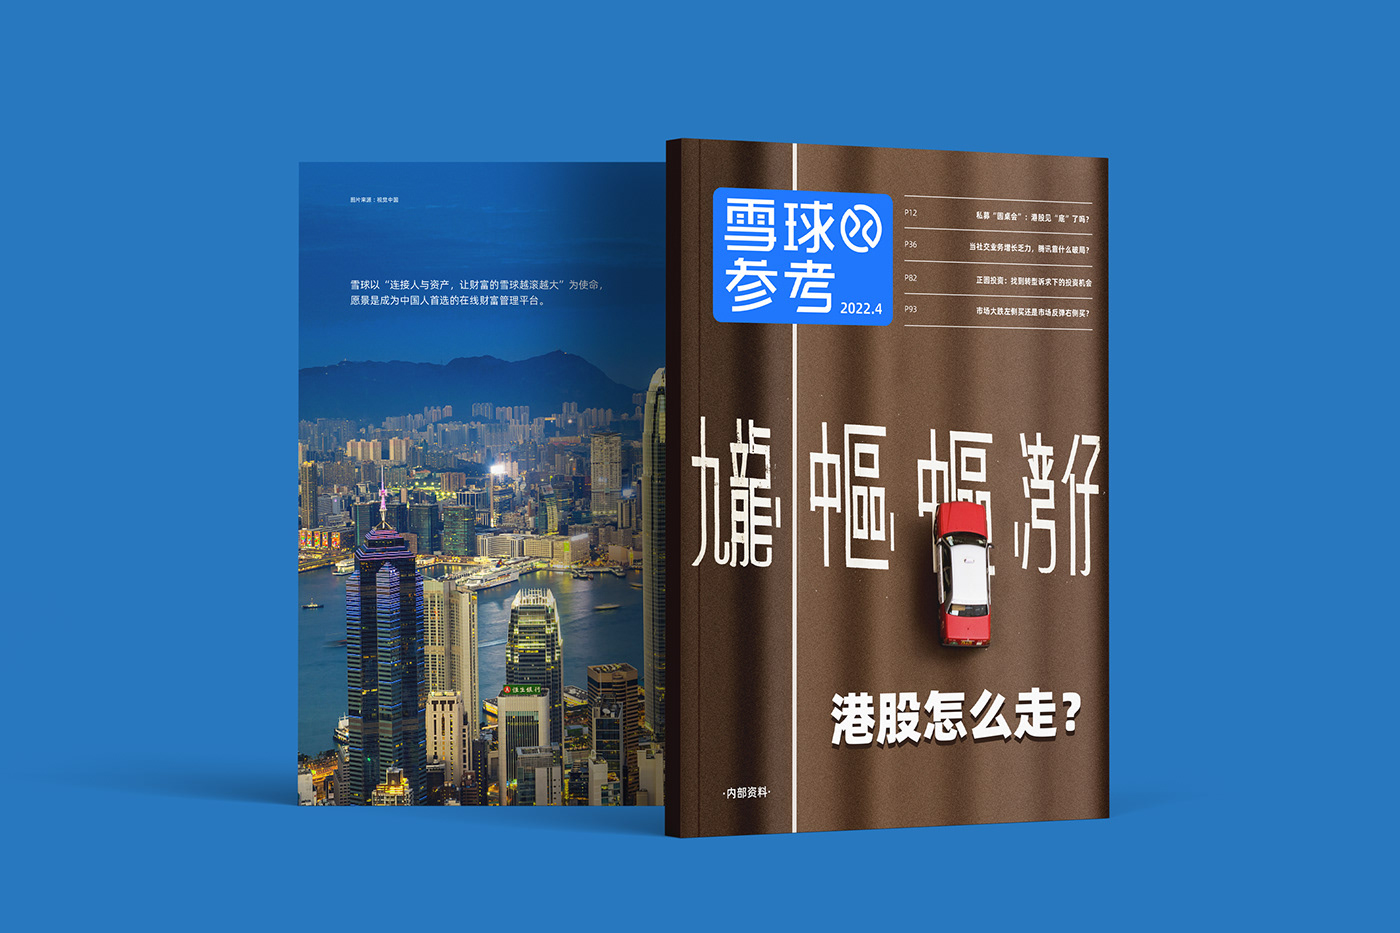 内刊 宣传册 手册 排版 杂志 版式 画册 研究报告 金融 金融手册